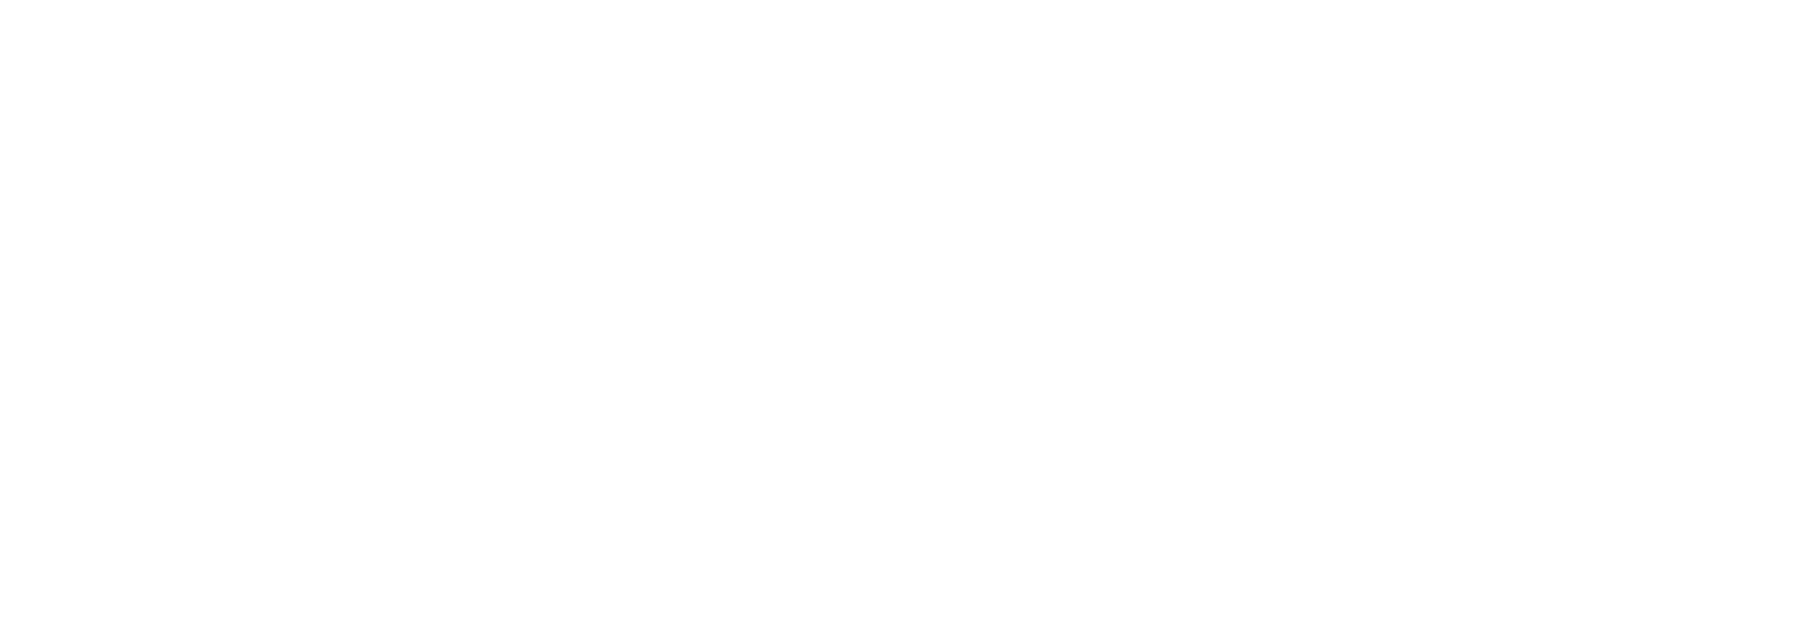 CDG Logo - Brand Design Agency Dublin Ireland, Web Design, Website Development